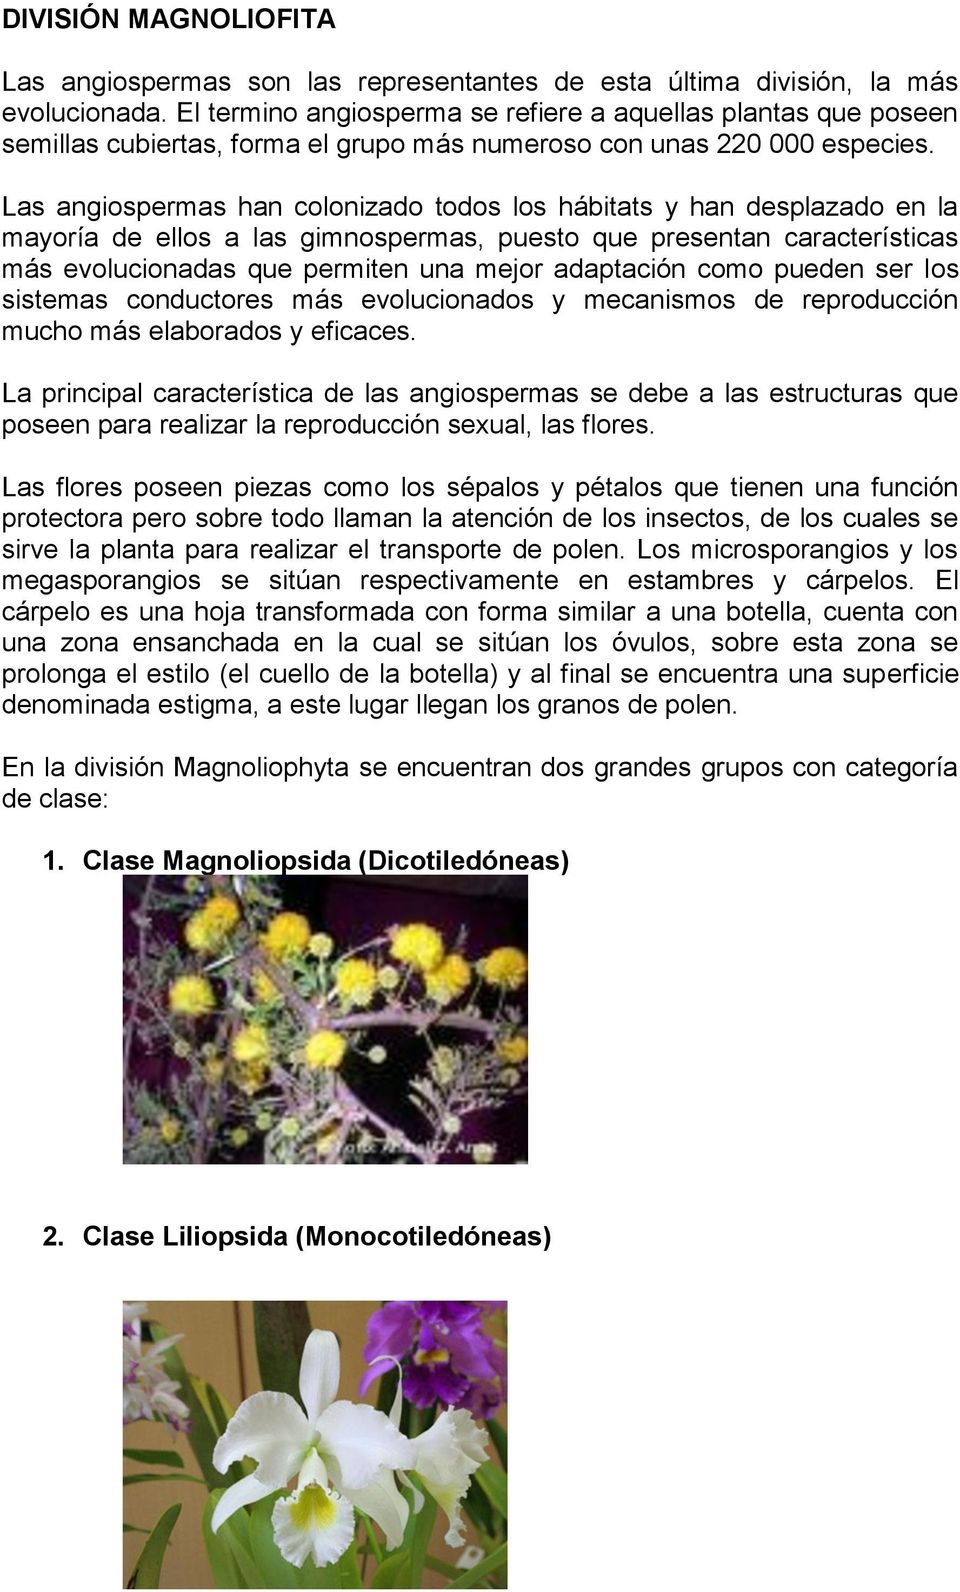 Las angiospermas han colonizado todos los hábitats y han desplazado en la mayoría de ellos a las gimnospermas, puesto que presentan características más evolucionadas que permiten una mejor adaptación